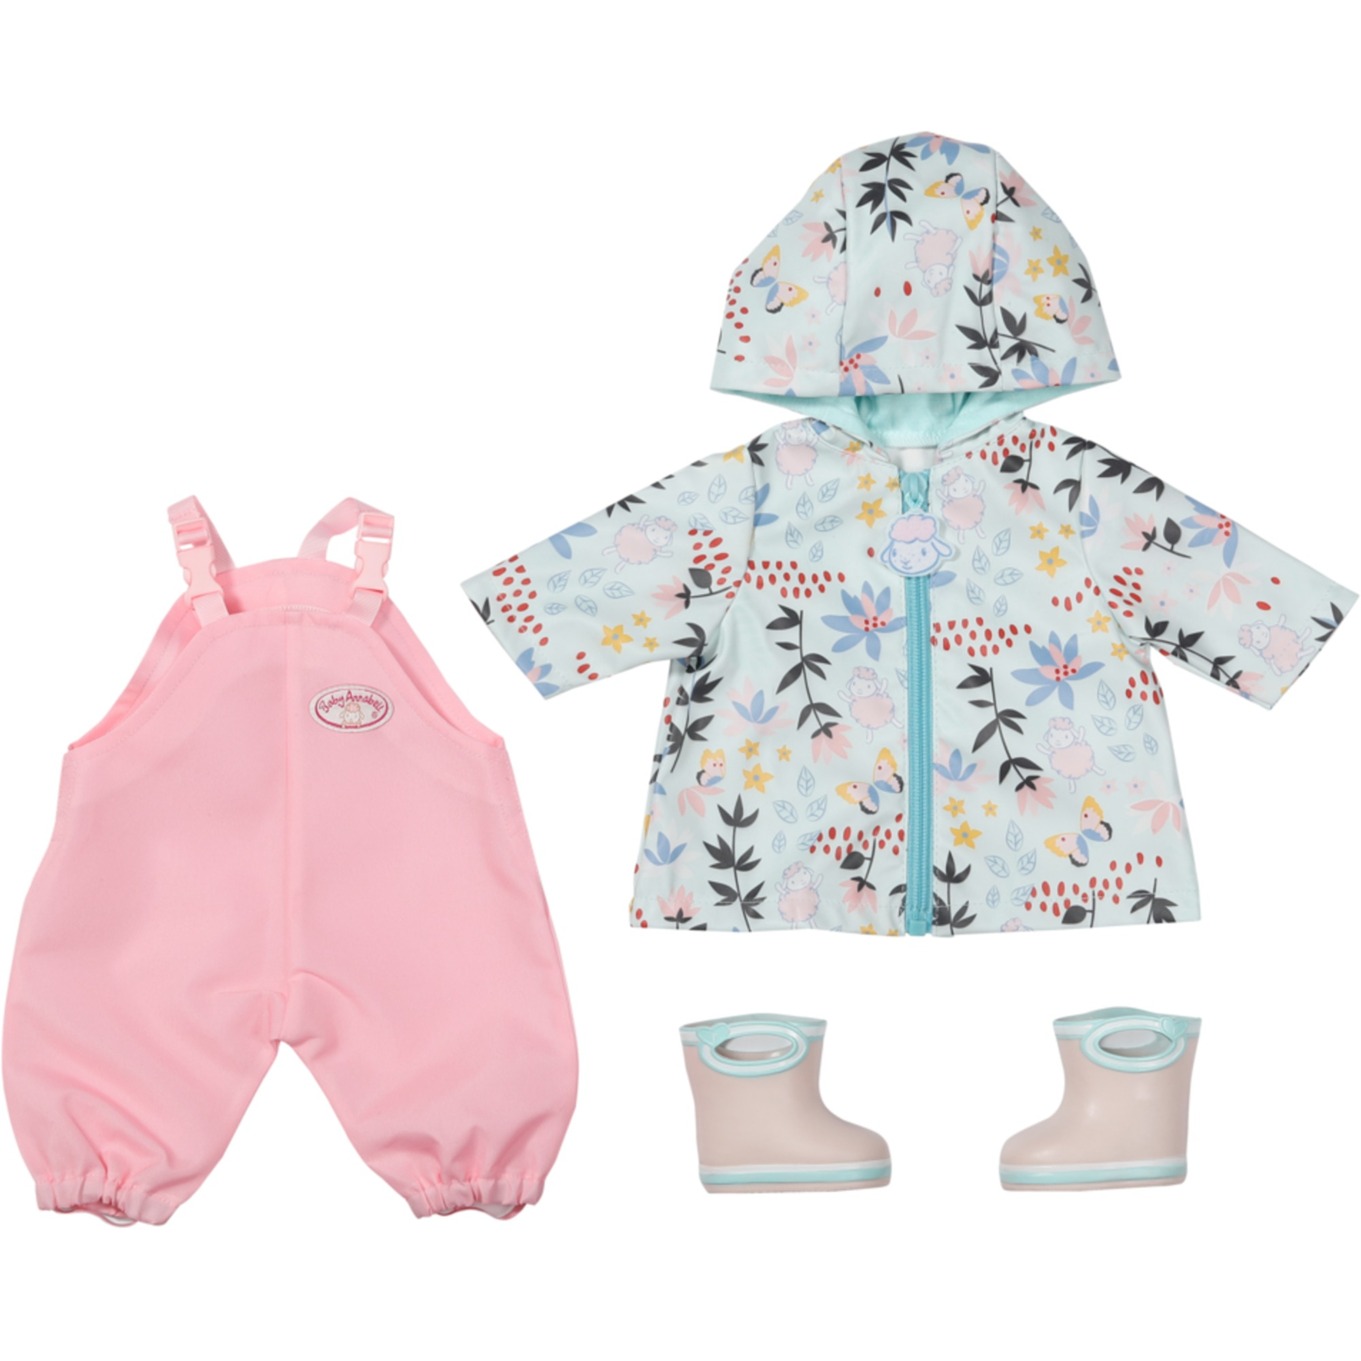 Baby Annabell Zapf Creation 706718 Deluxe Regen 43cm-Regenkleidung für Puppen 3-teiliges Set bestehend aus Matschhose, Regenmantel und Gummistiefeln in rosa und Mint